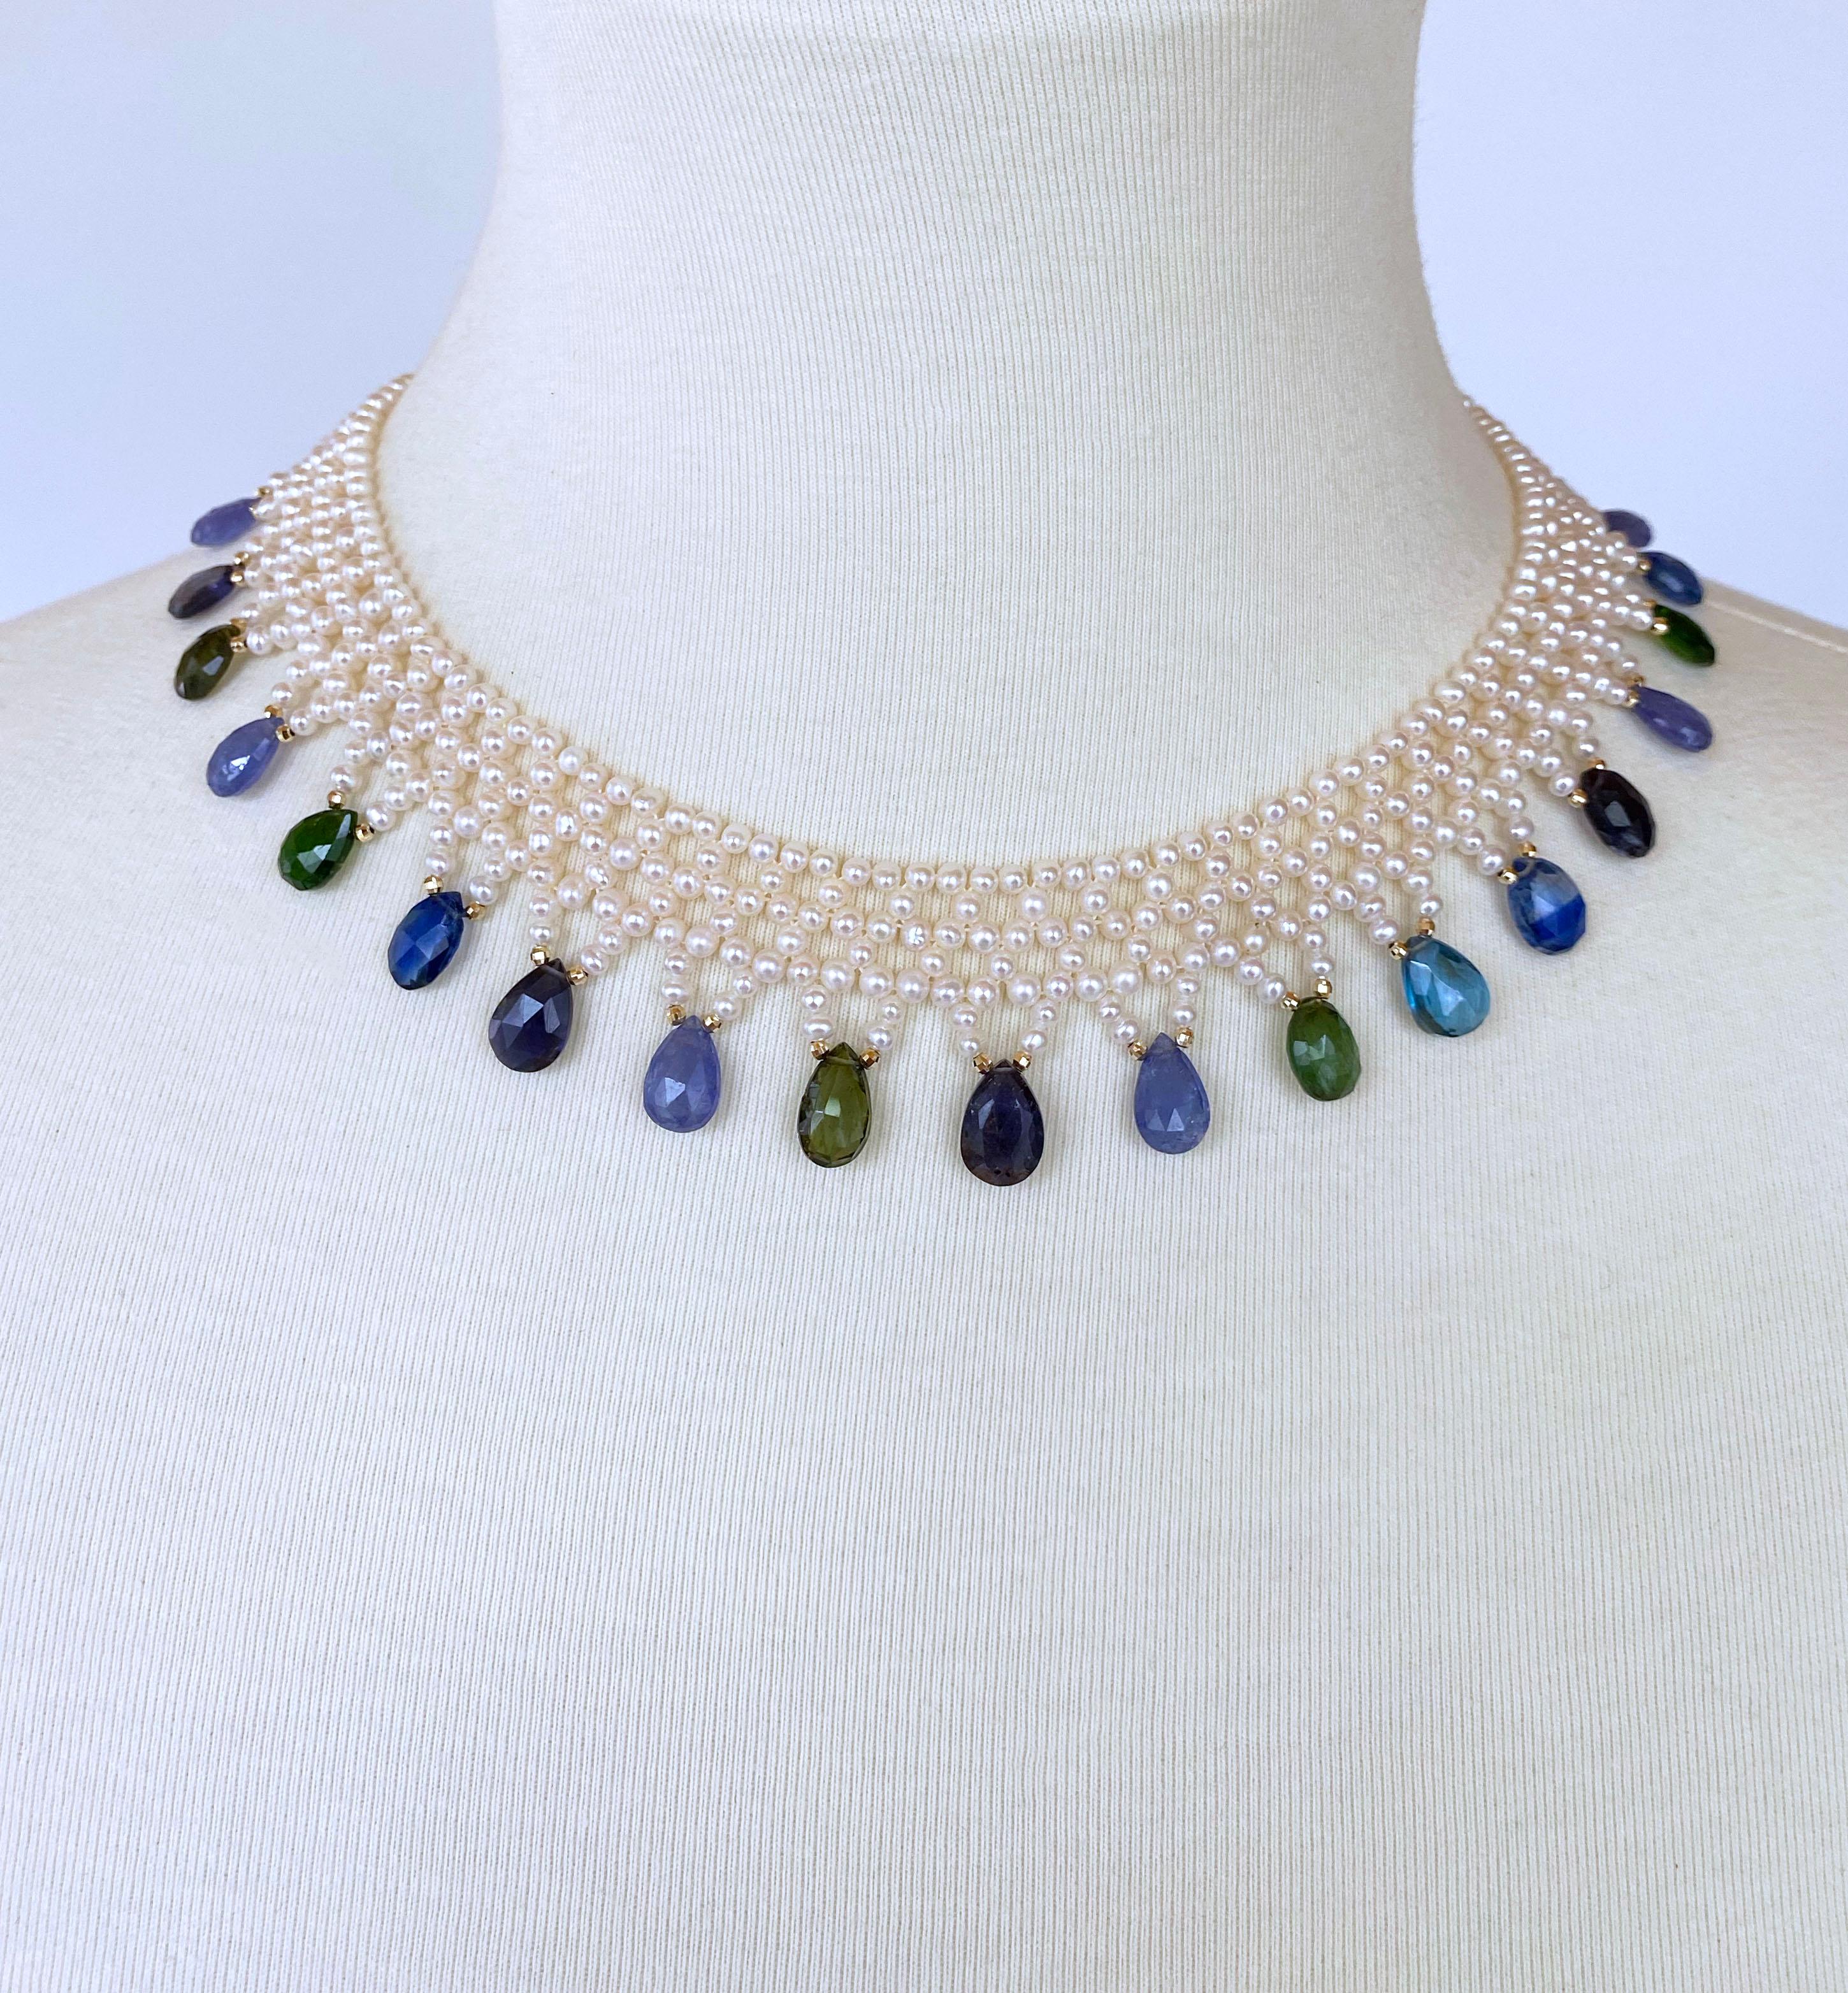 Pièce classique de Marina J. Ce magnifique collier fait à la main est composé de perles très brillantes, tissées dans un motif de dentelle serrée. Les briolettes de Jewell aux couleurs multiples et aux tons froids ornent ce collier avec des accents